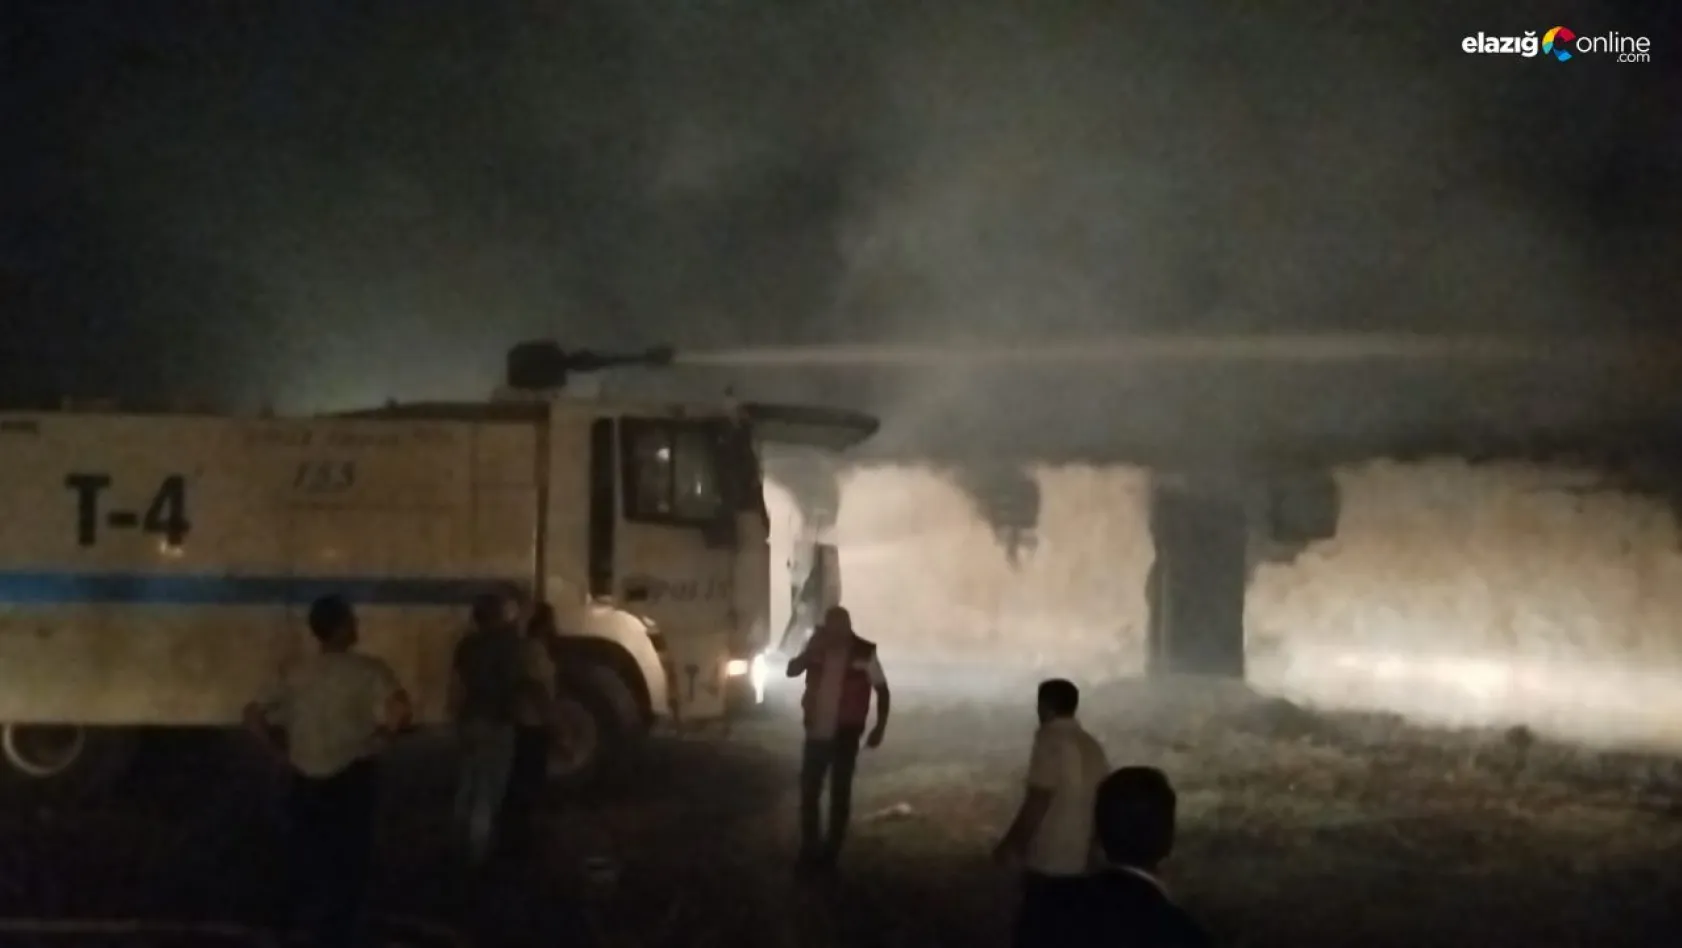 Bingöl'de ahır yangını: 2 büyükbaş telef oldu